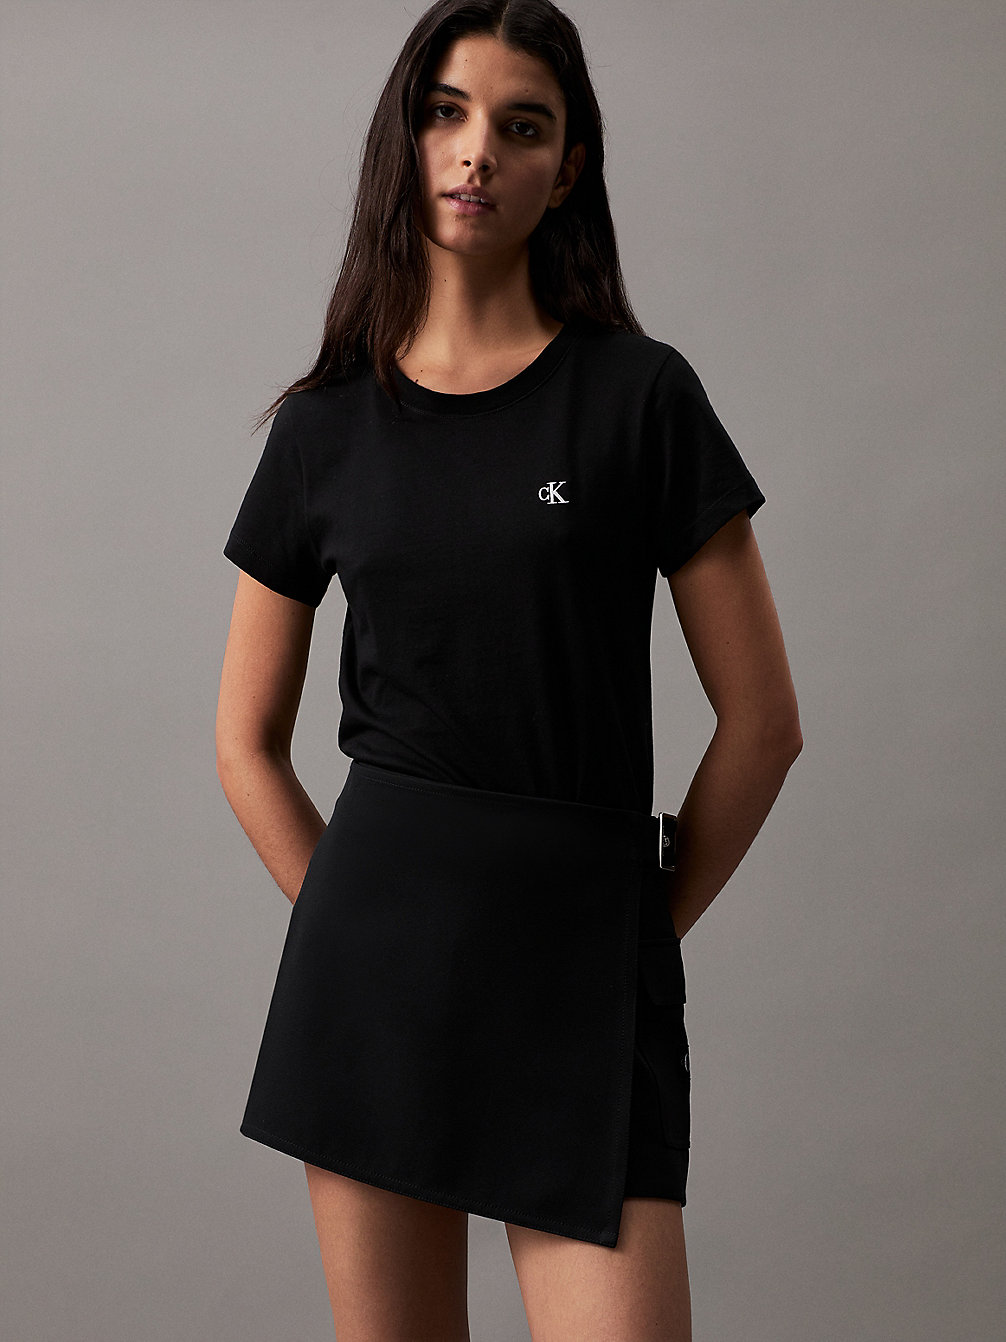 CK BLACK Slim T-Shirt Aus Bio-Baumwolle undefined Damen Calvin Klein